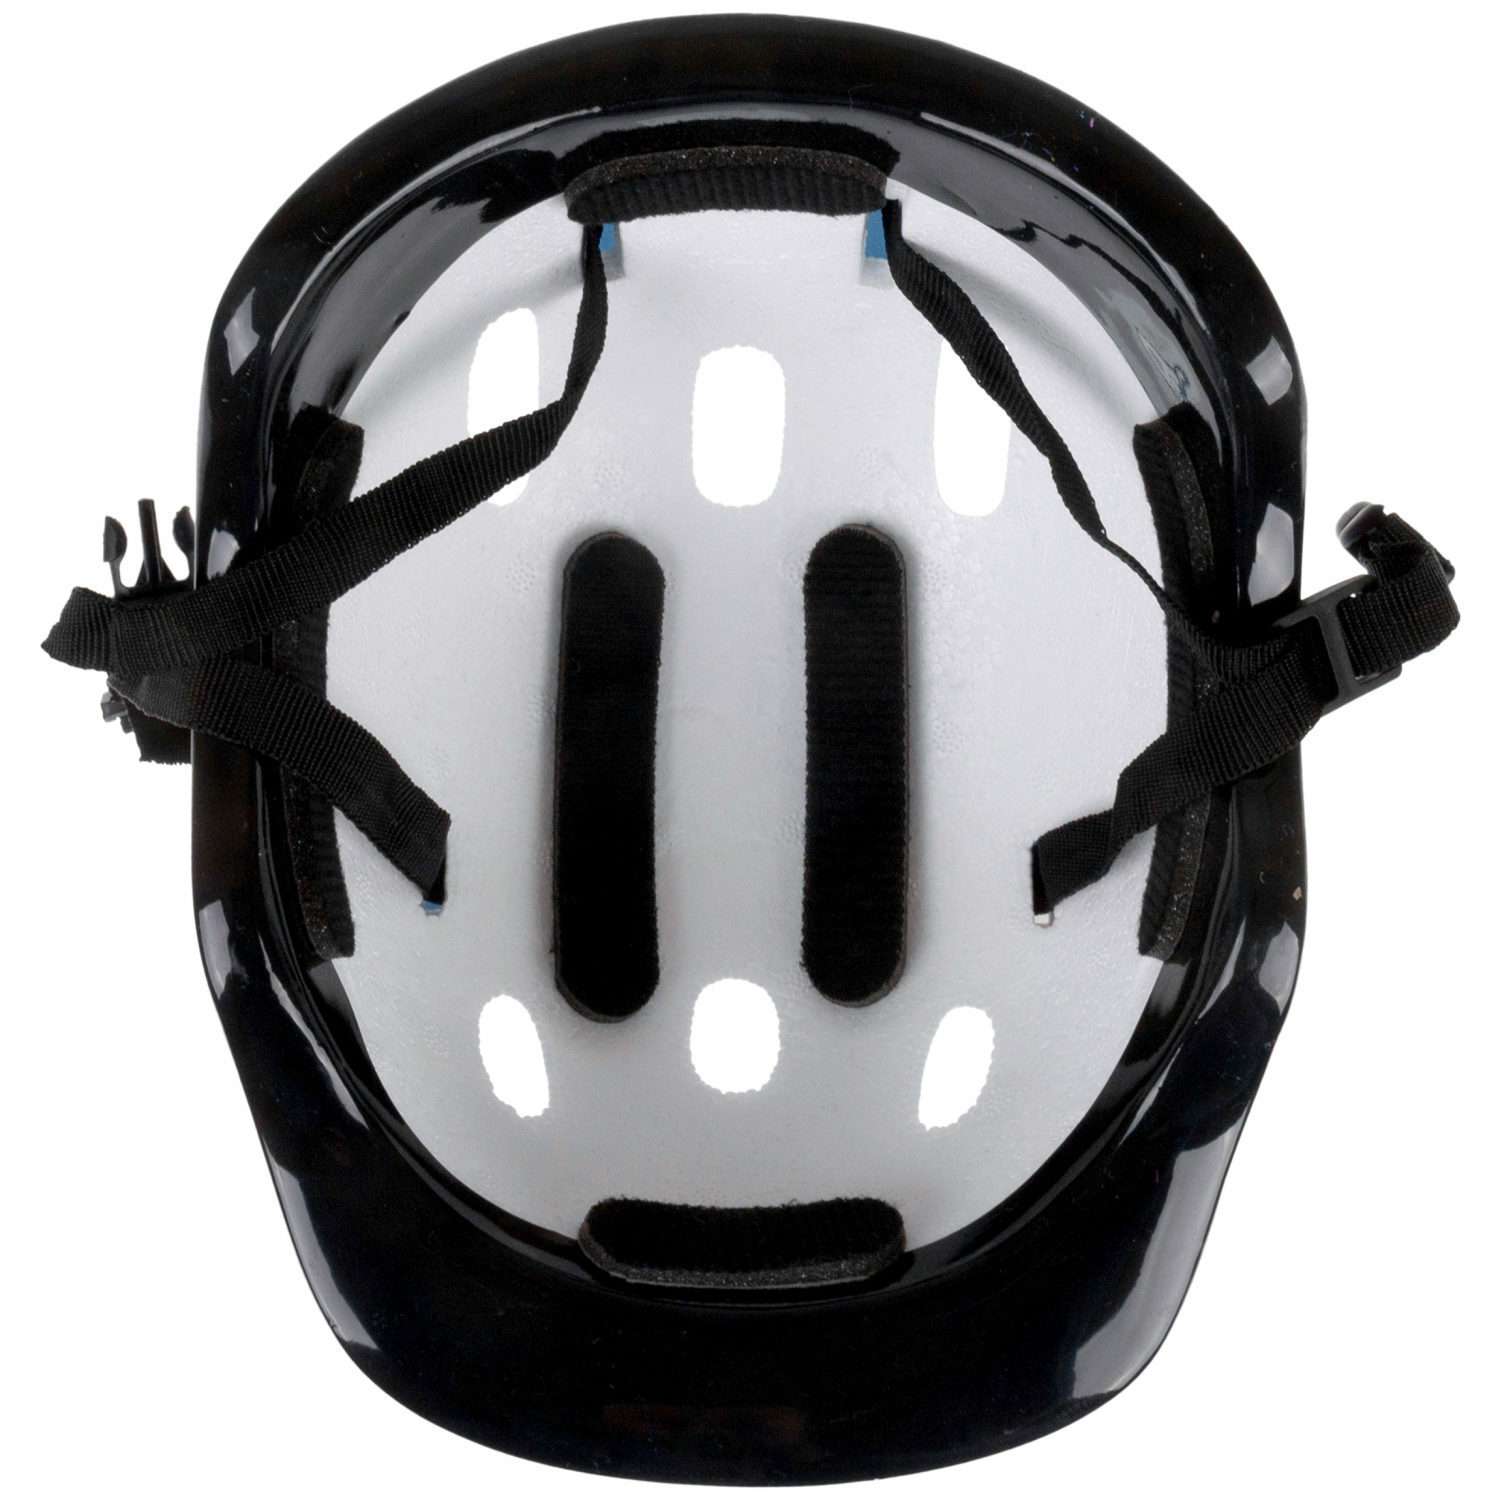 Ролики Navigator детские раздвижные 30 - 33 размер с защитой и шлемом синий - фото 7